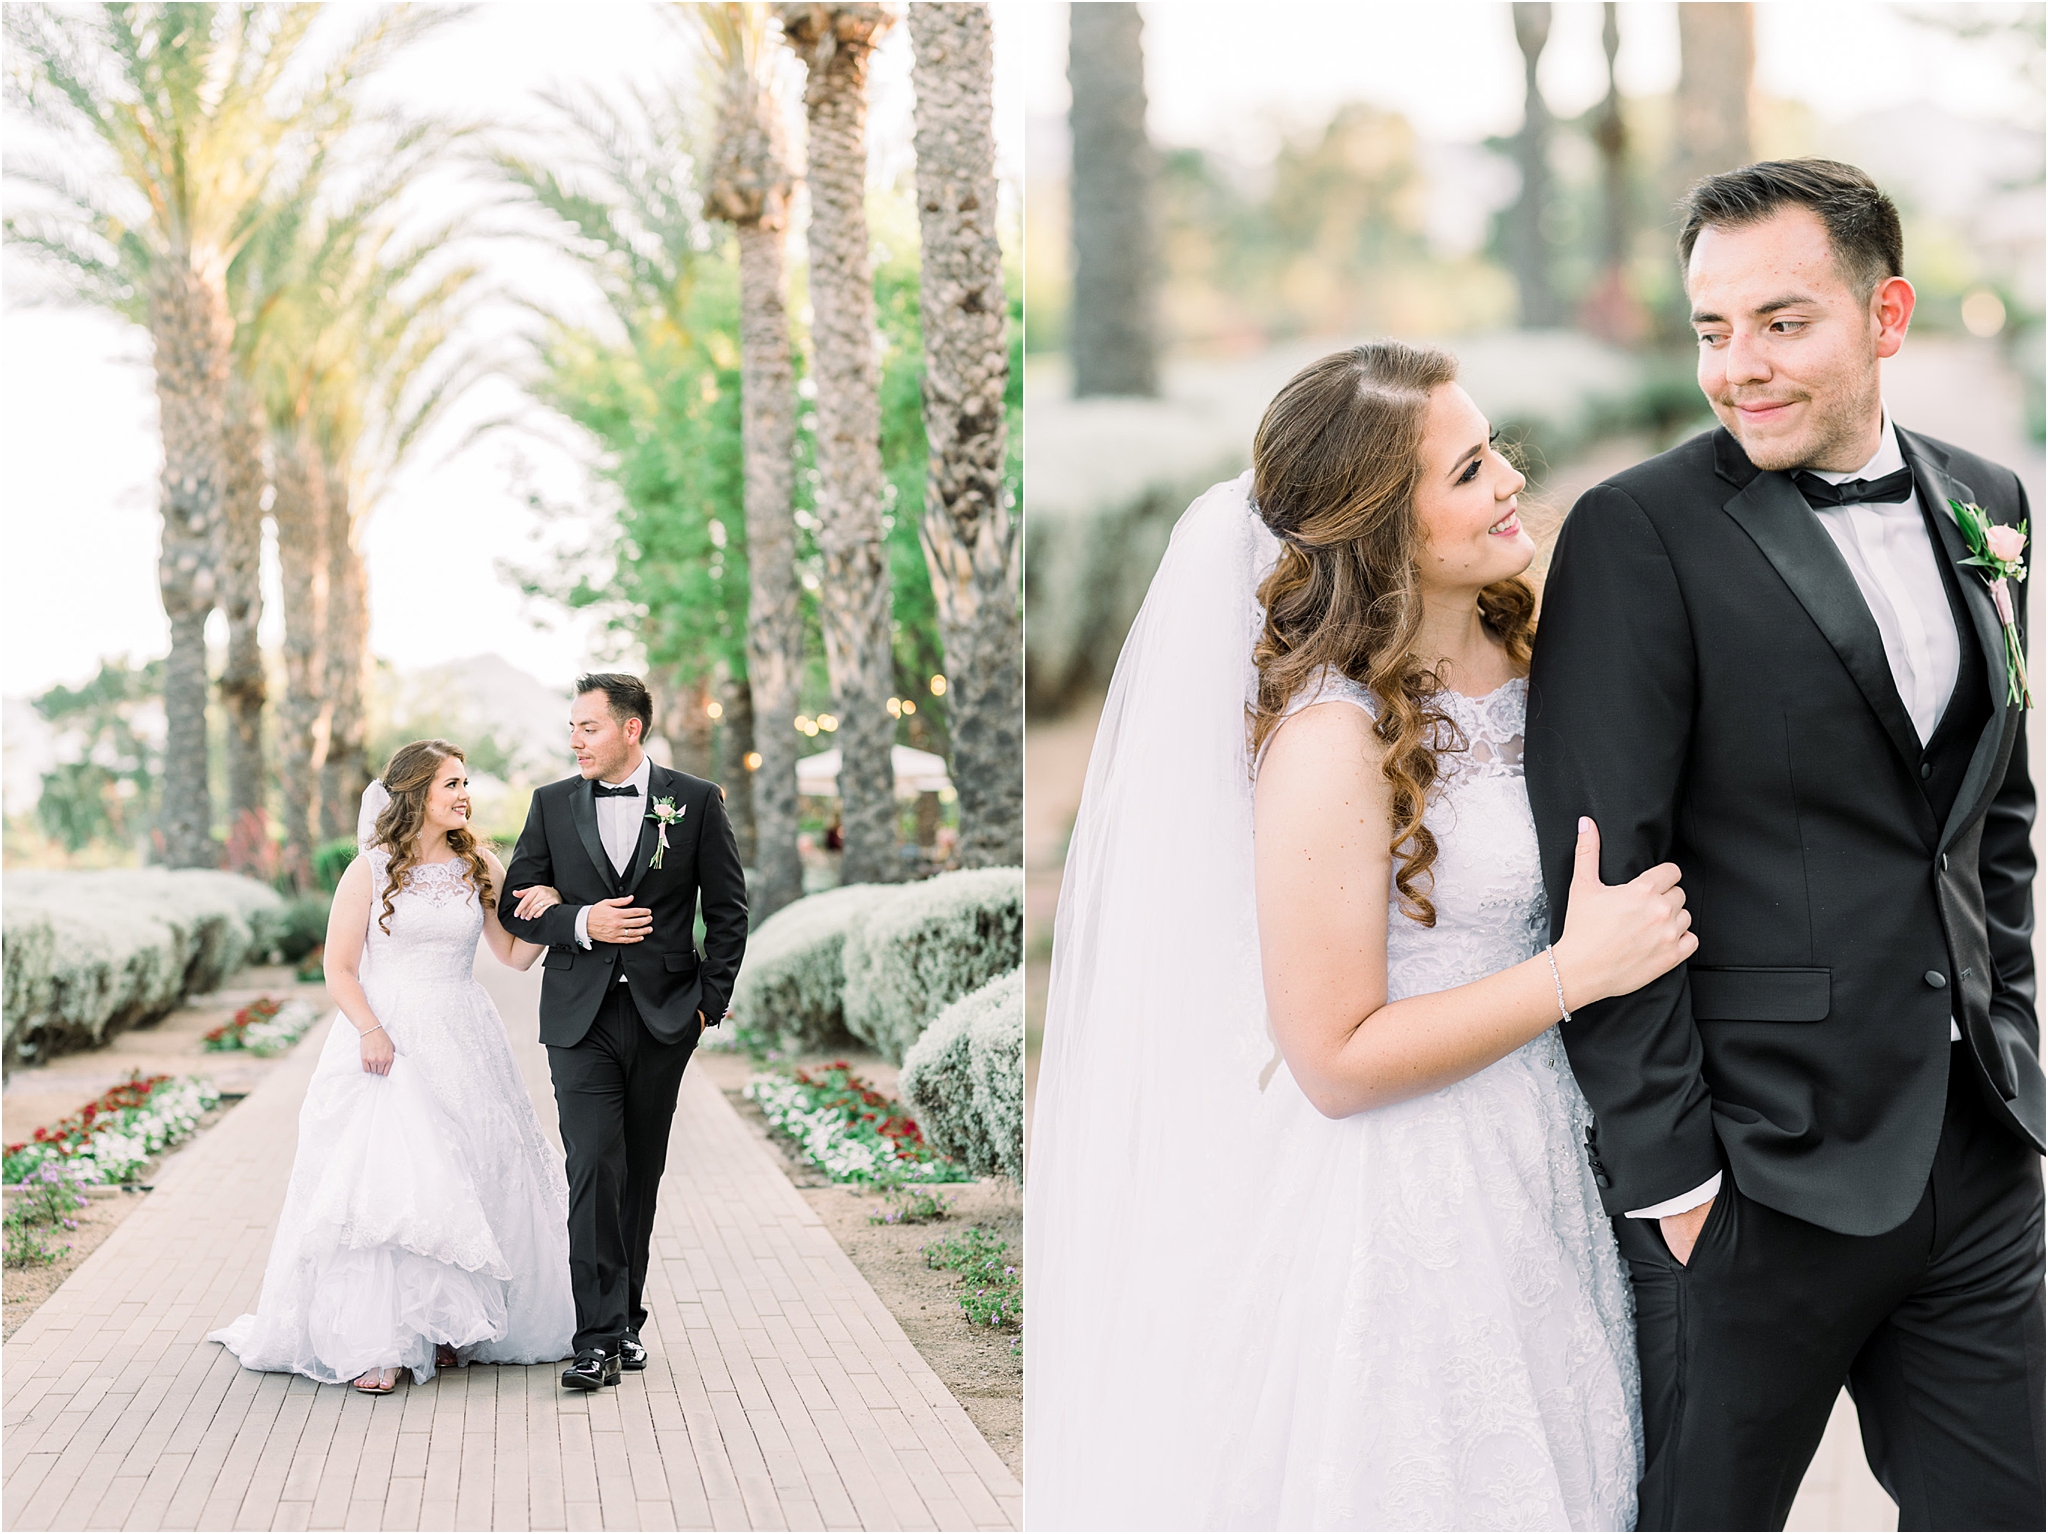 Omni Wedding Photographer | Tucson AZ | Ligia and Arturo bride and groom photos | Tucson Wedding Photographer | West End Photography